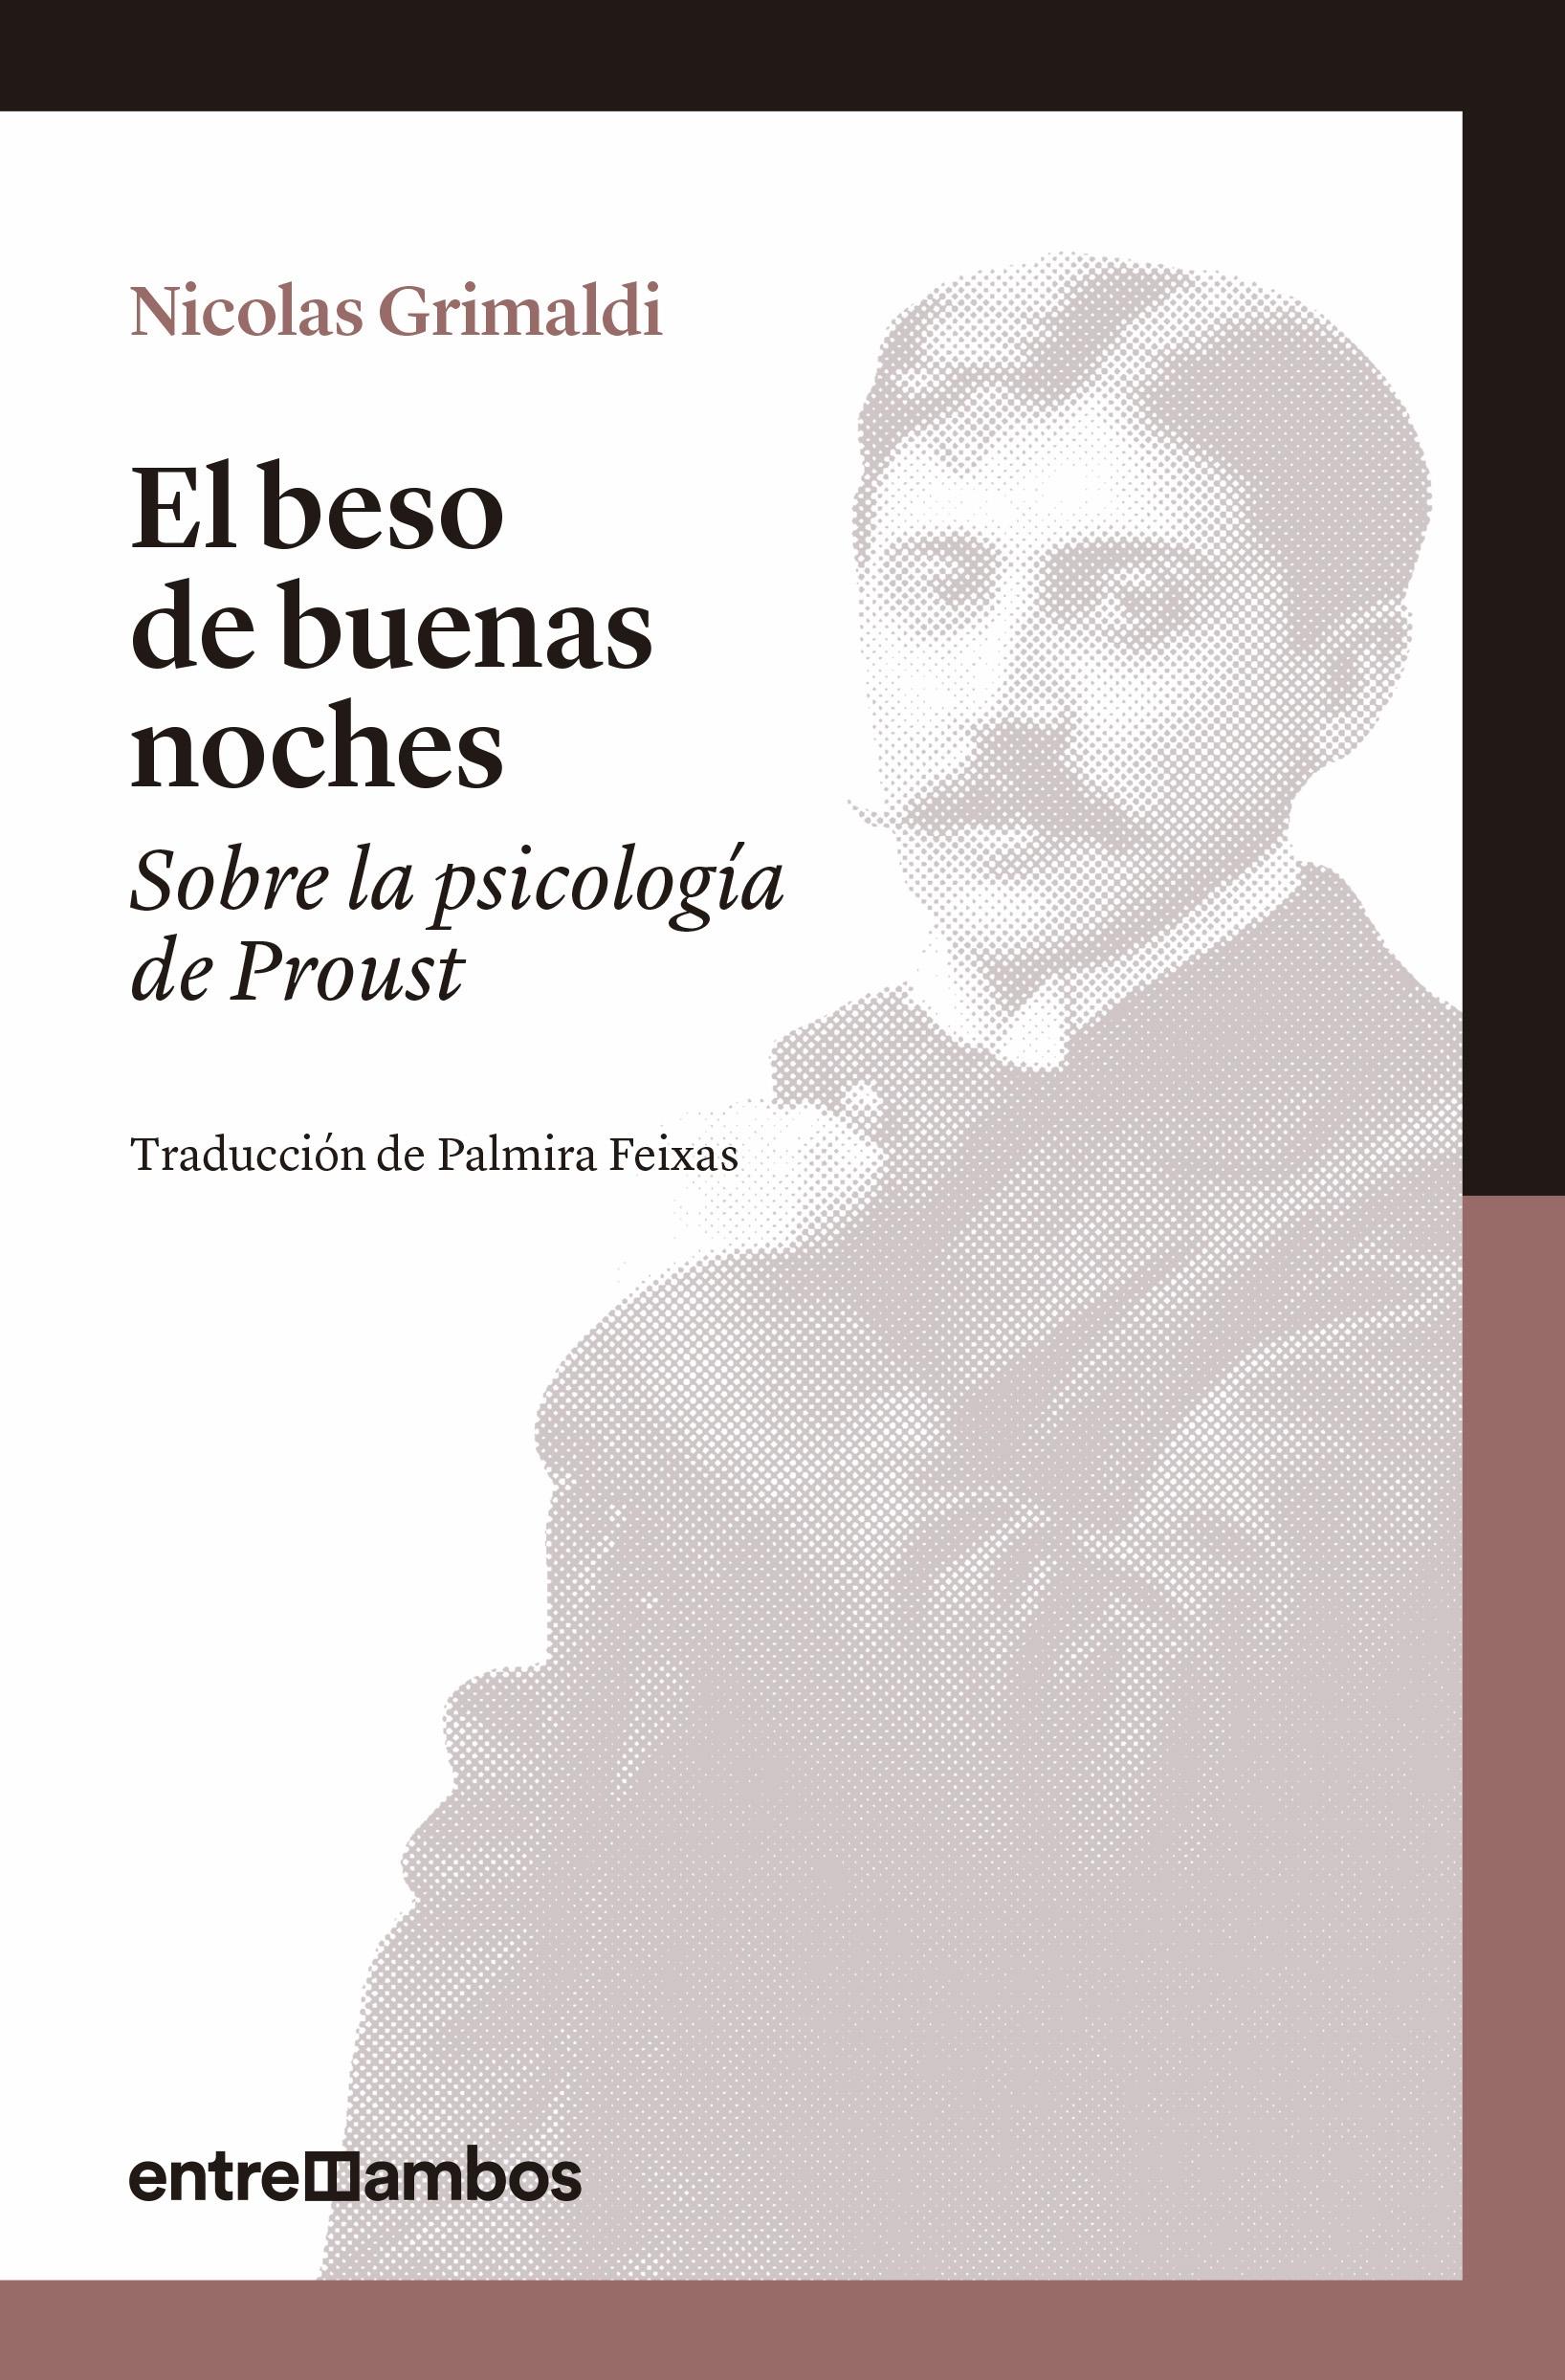 El Beso de Buenas Noches "Sobre la Psicología de Proust"